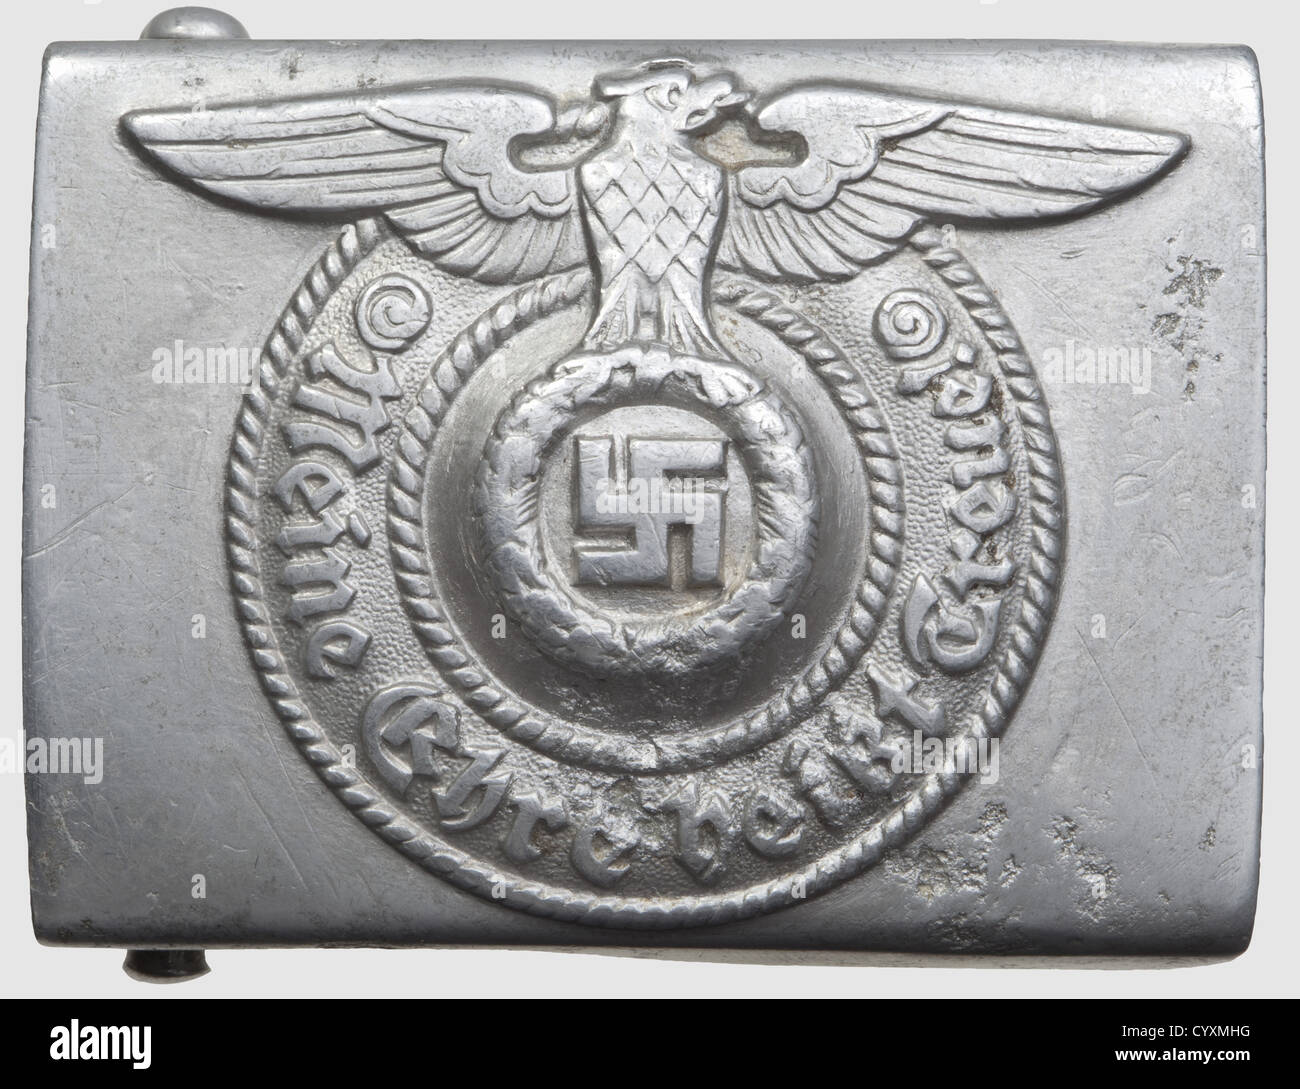 Boucle de ceinture pour hommes inscrits et 'Unterführer', en aluminium,  fabricant Assmann 'RZM 155/39 SS', traces d'oxydation, historique,  historique, années 1930, années 1930, XXe siècle, service secret, service  de sécurité, services secrets,